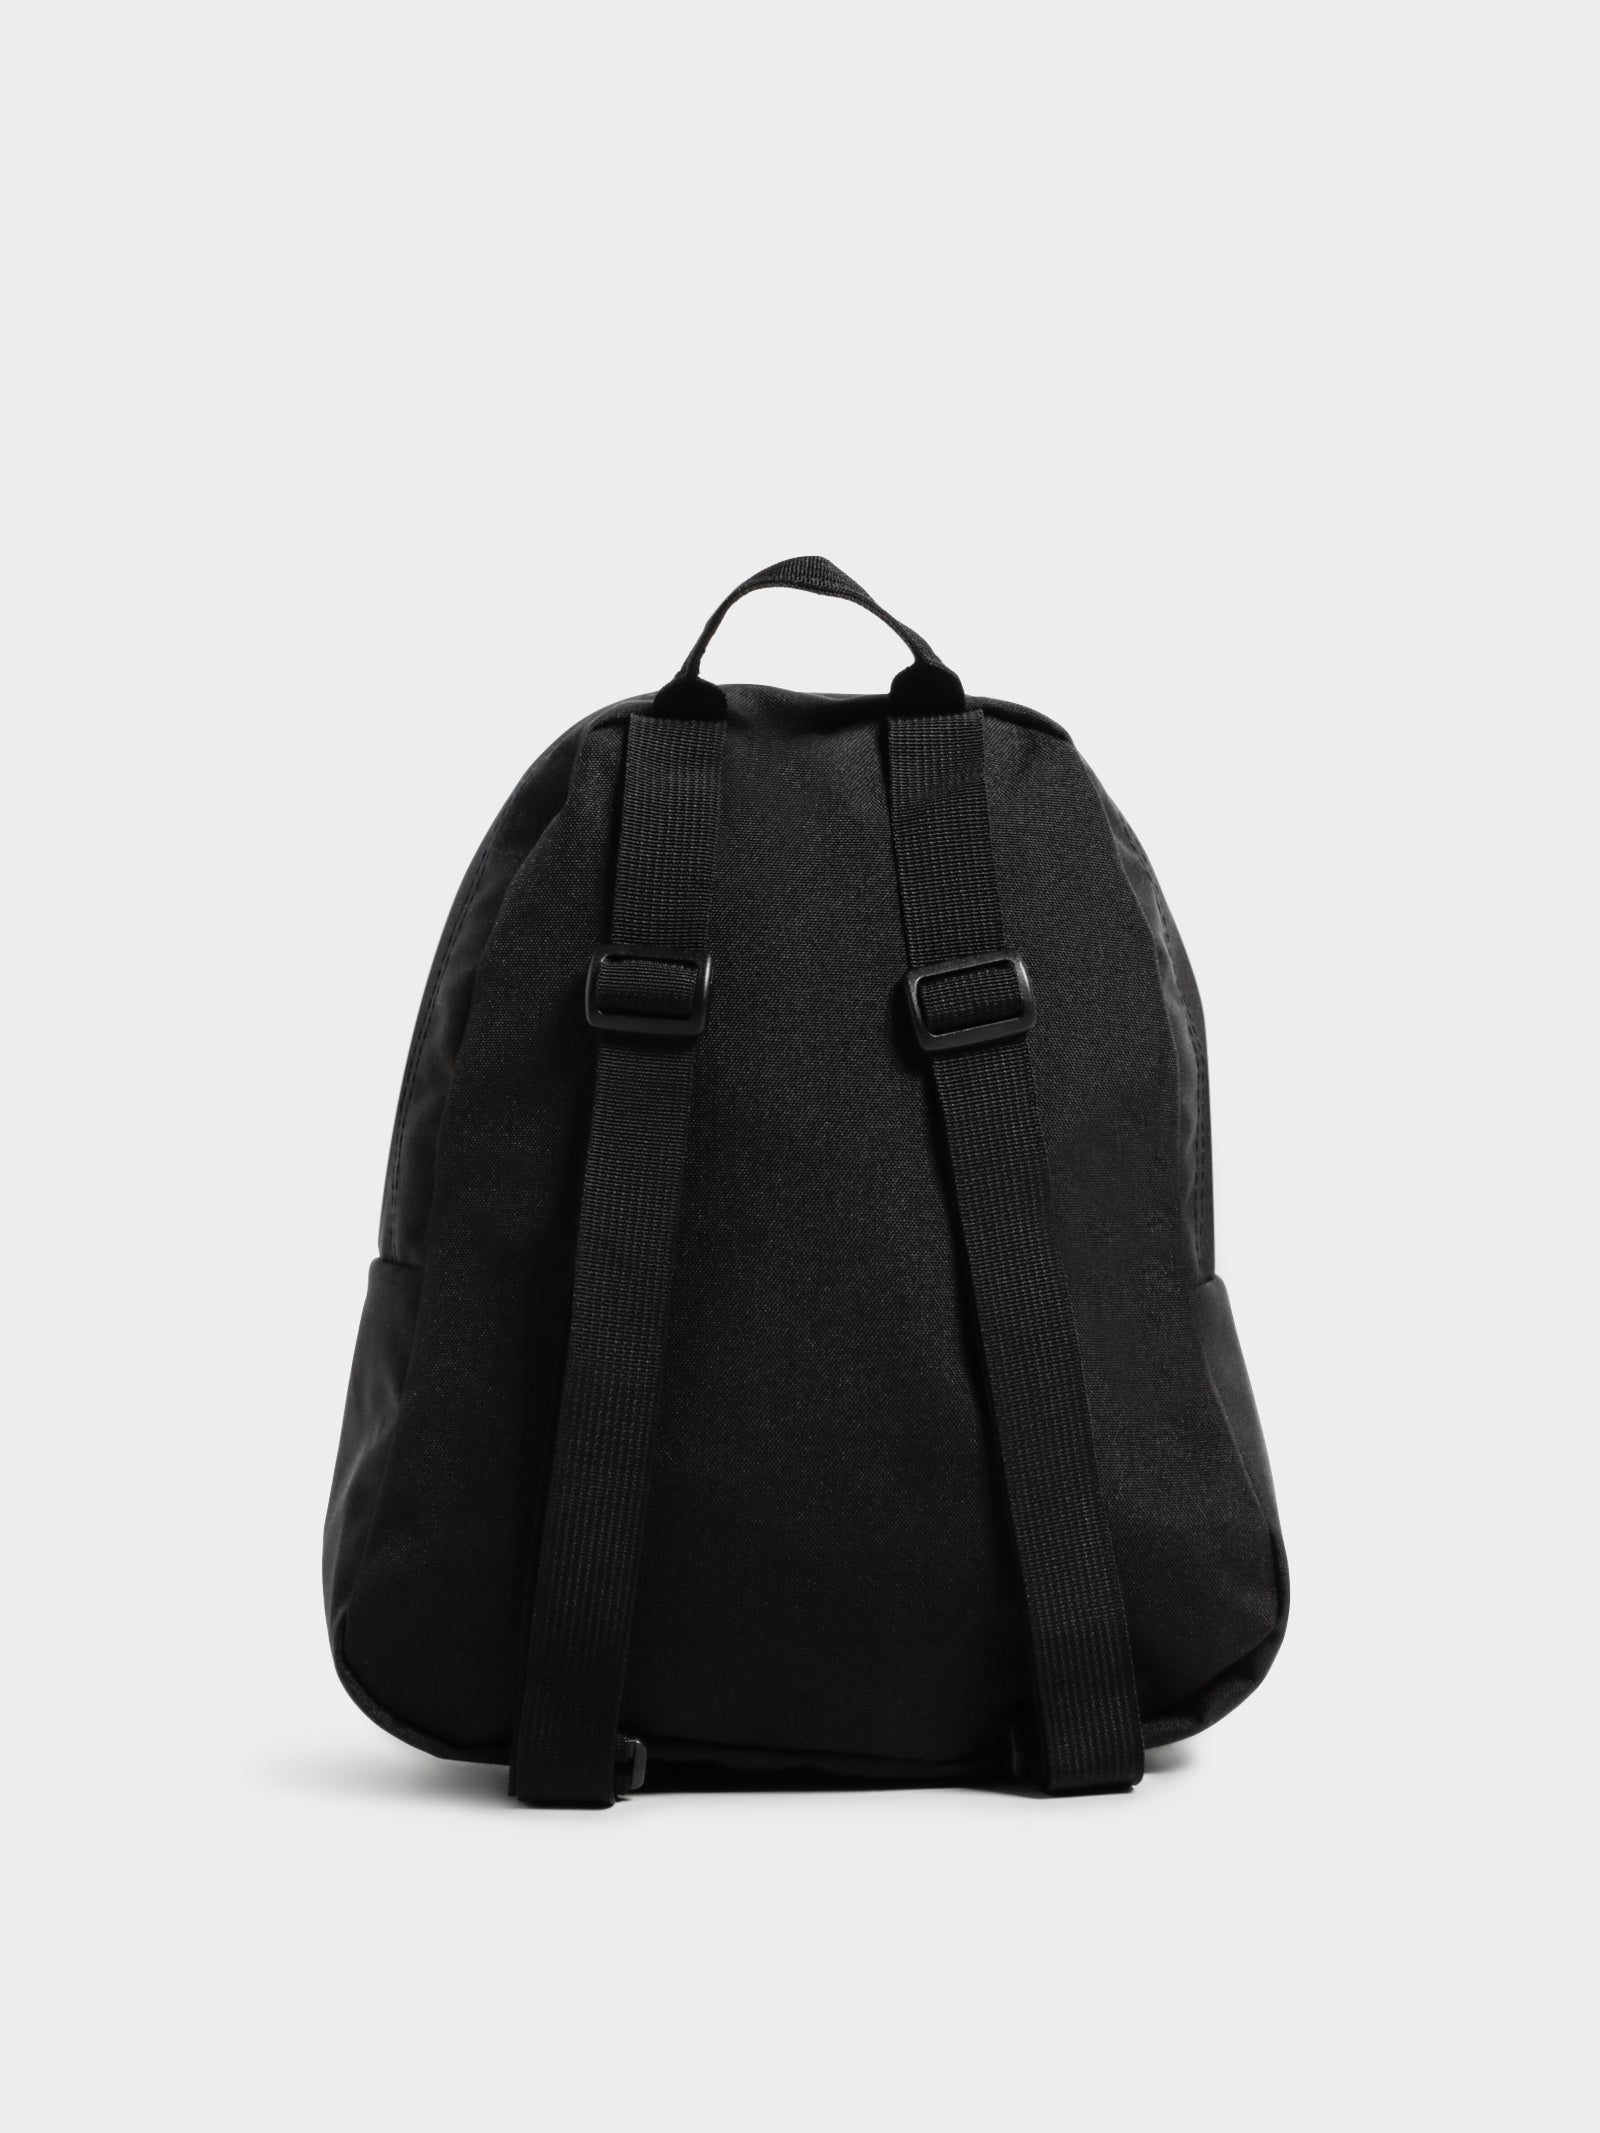 Half Pint Backpack in Black